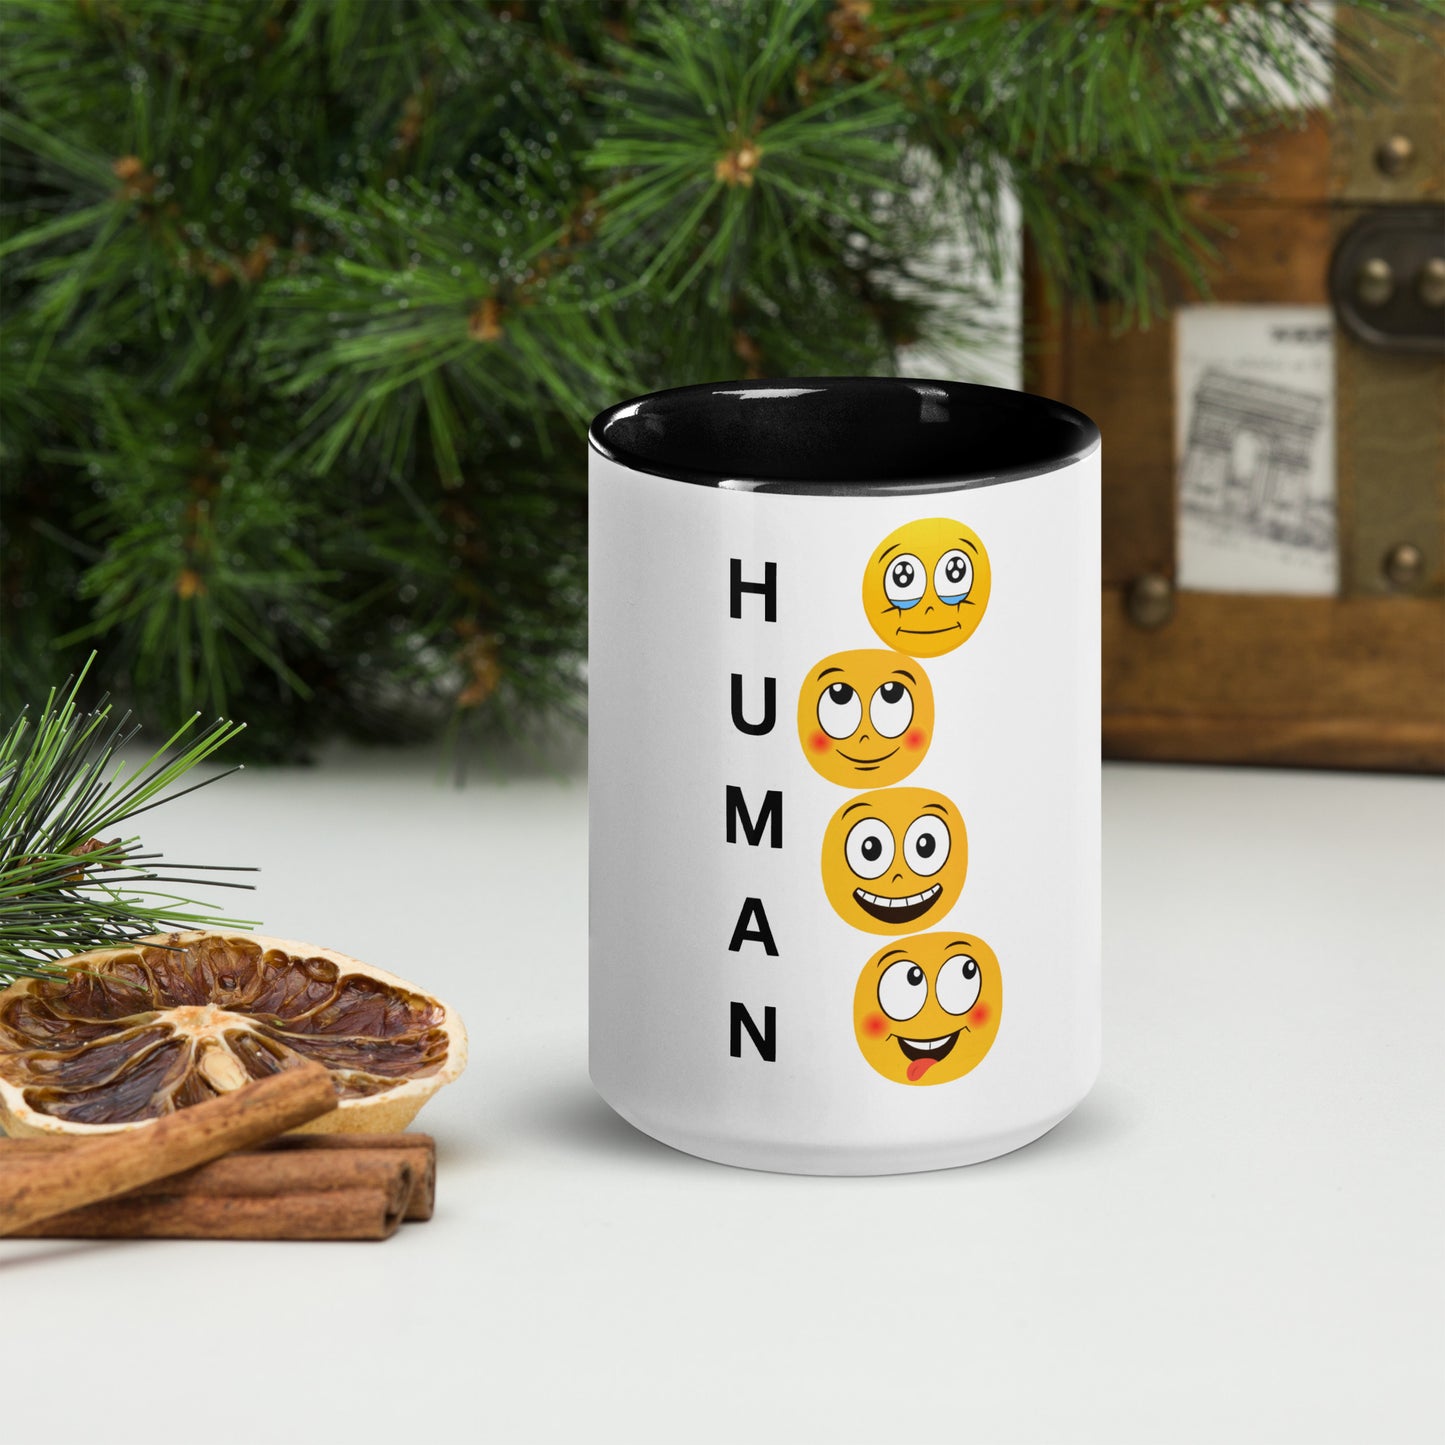 HUMAN - A Mug